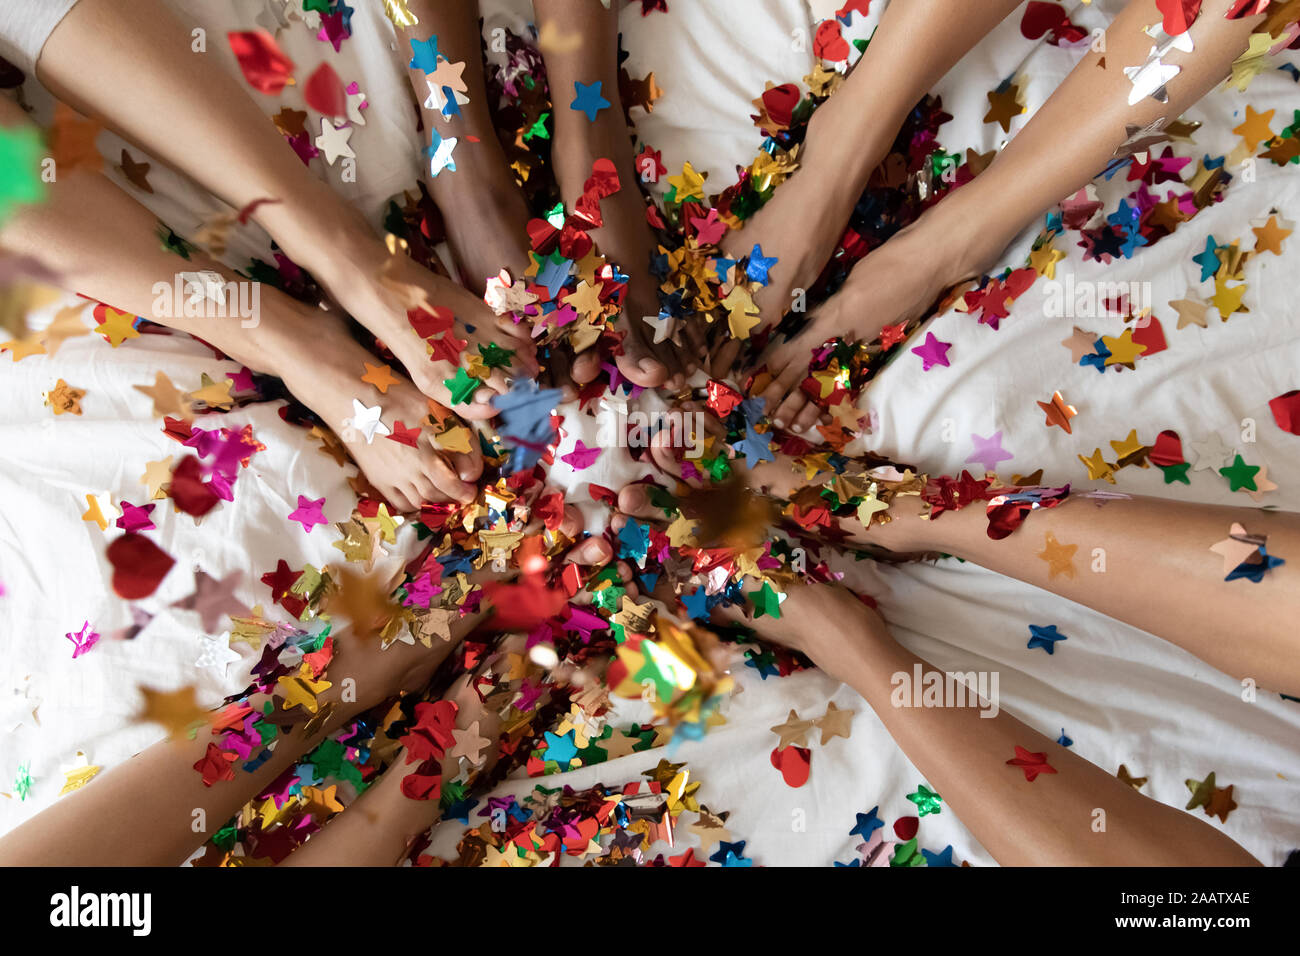 Les jambes des femmes diverses sur le lit recouvert de confettis colorés, gros plan Banque D'Images